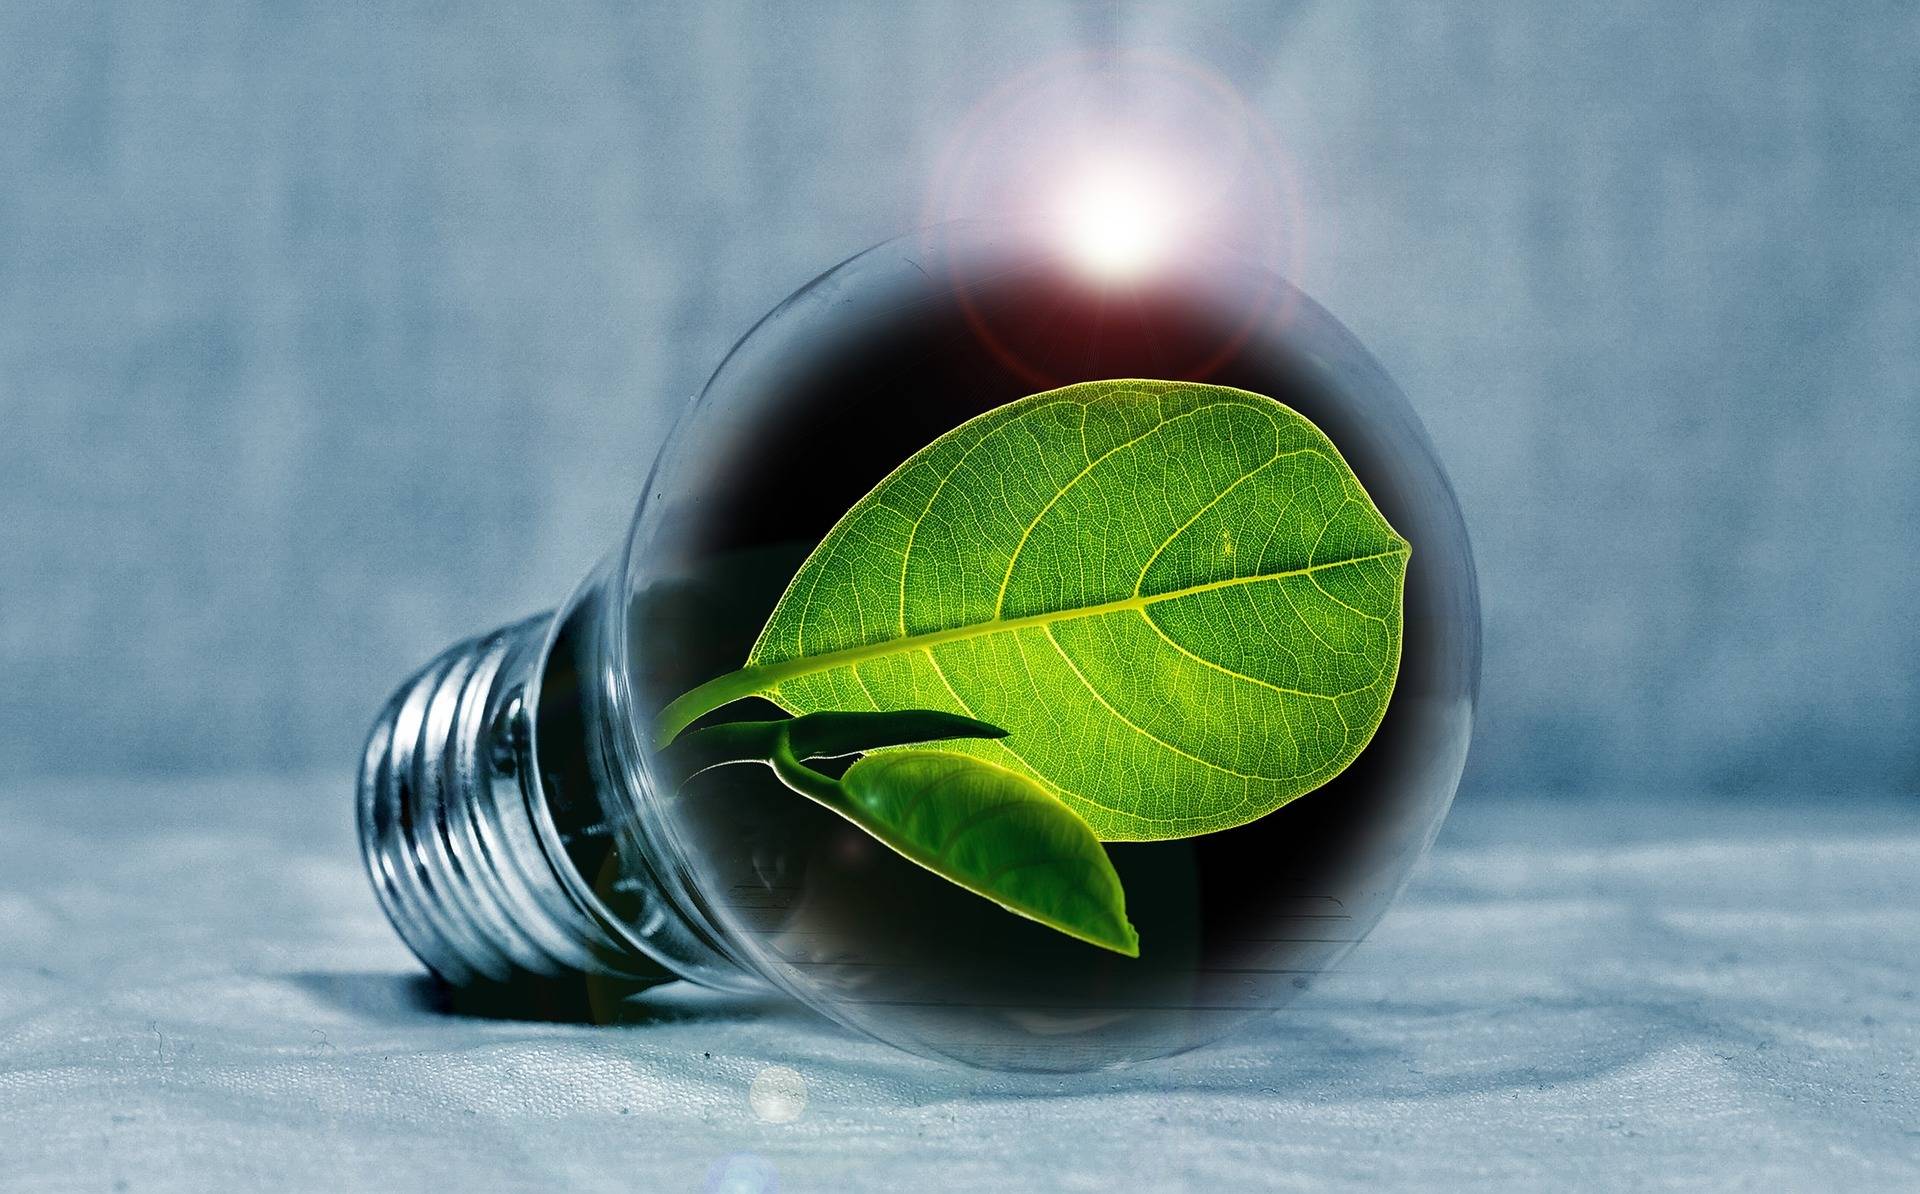 Kostenlose Energieberatung der Verbraucherzentrale: Neues Beratungsangebot zum Thema Energierecht